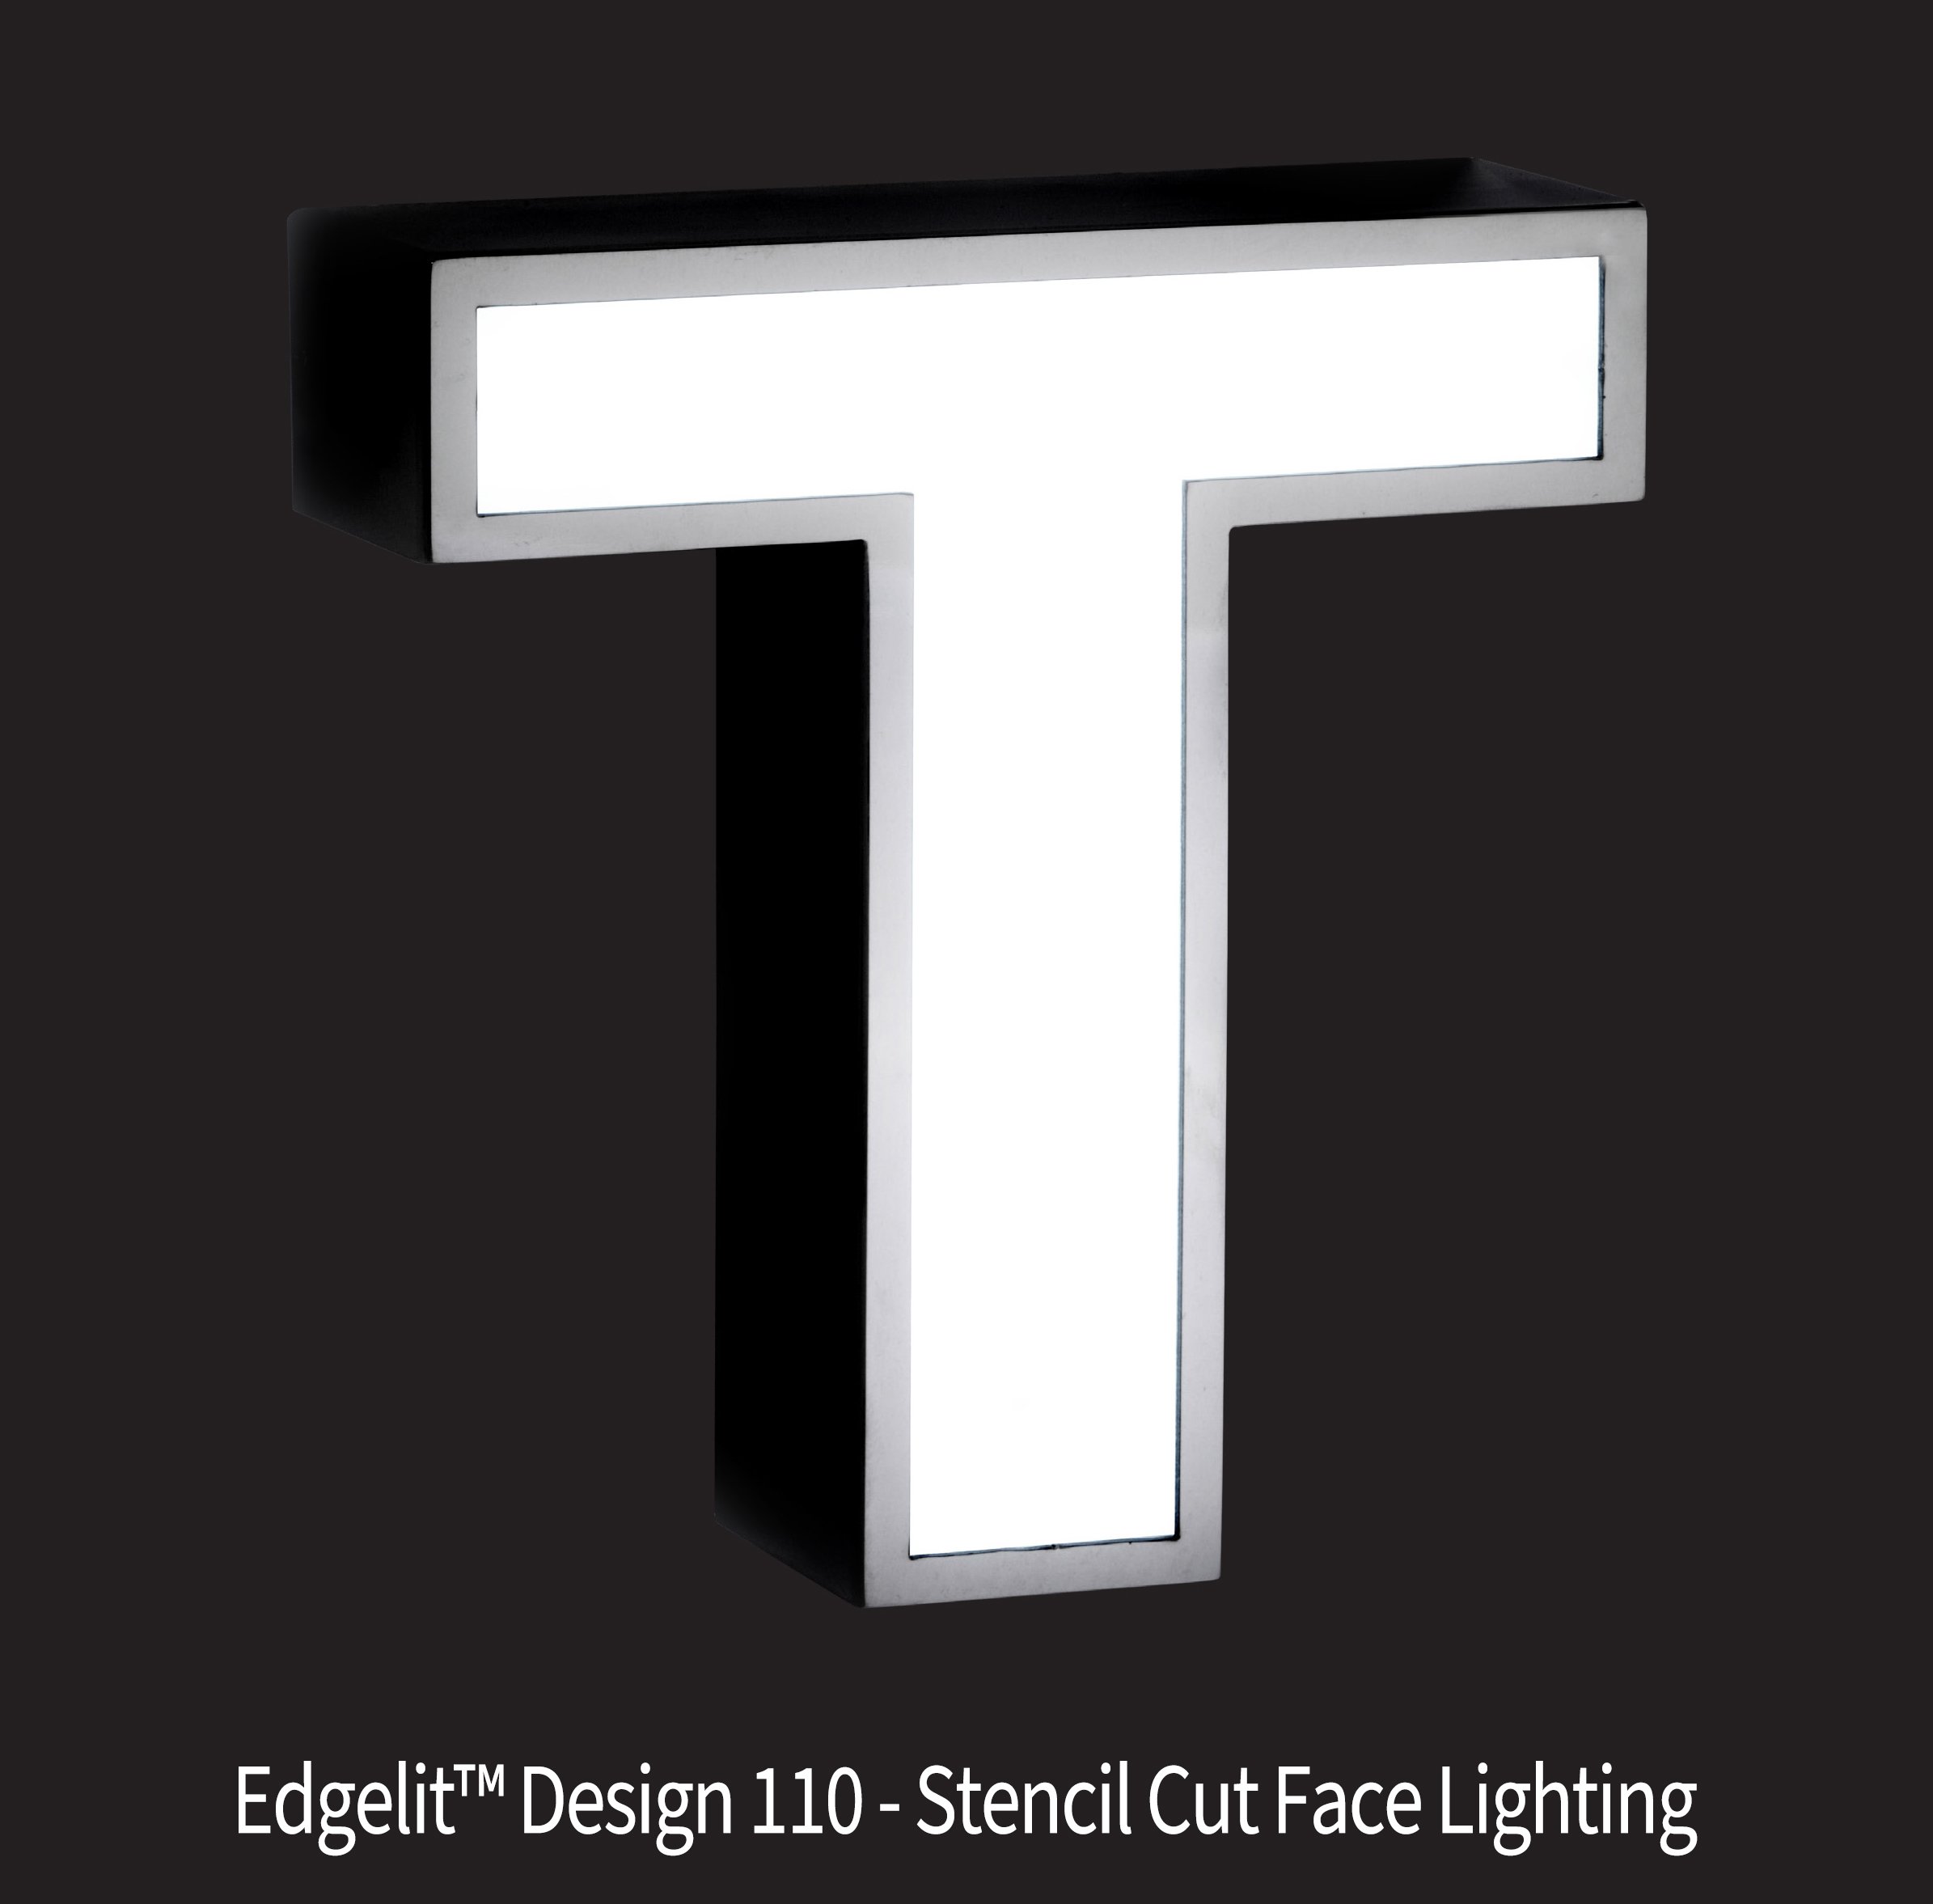 Illuminated_Edgelit_110_WORDS.jpg